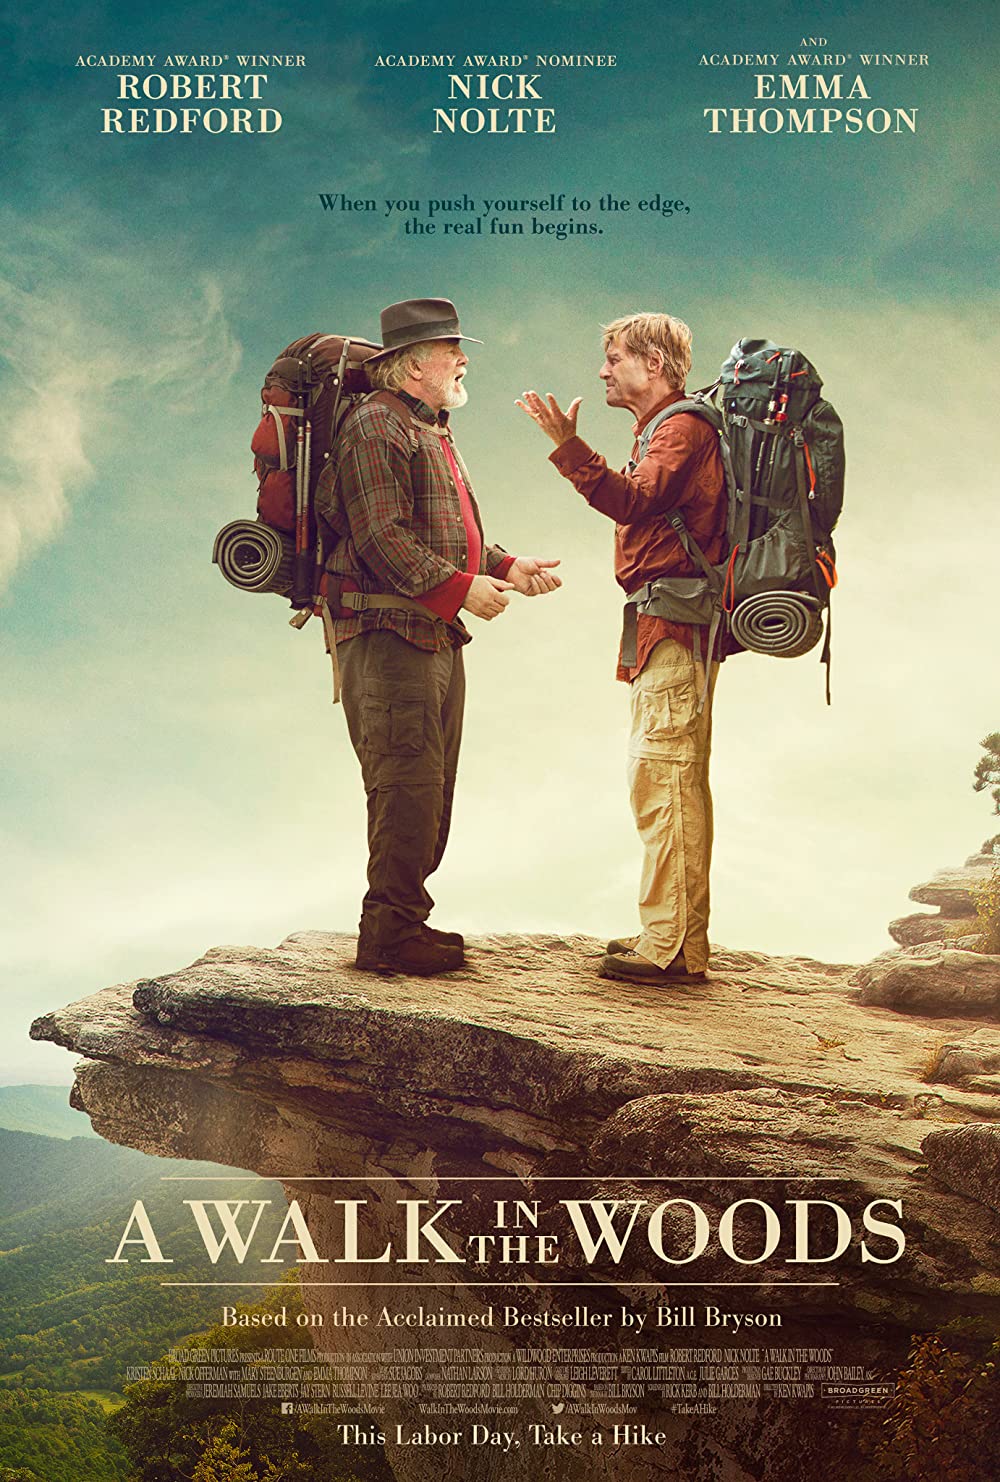 ดูหนังออนไลน์ฟรี A Walk in the Woods (2015) เข้าป่าหาชีวิต ฉบับคนวัยดึก